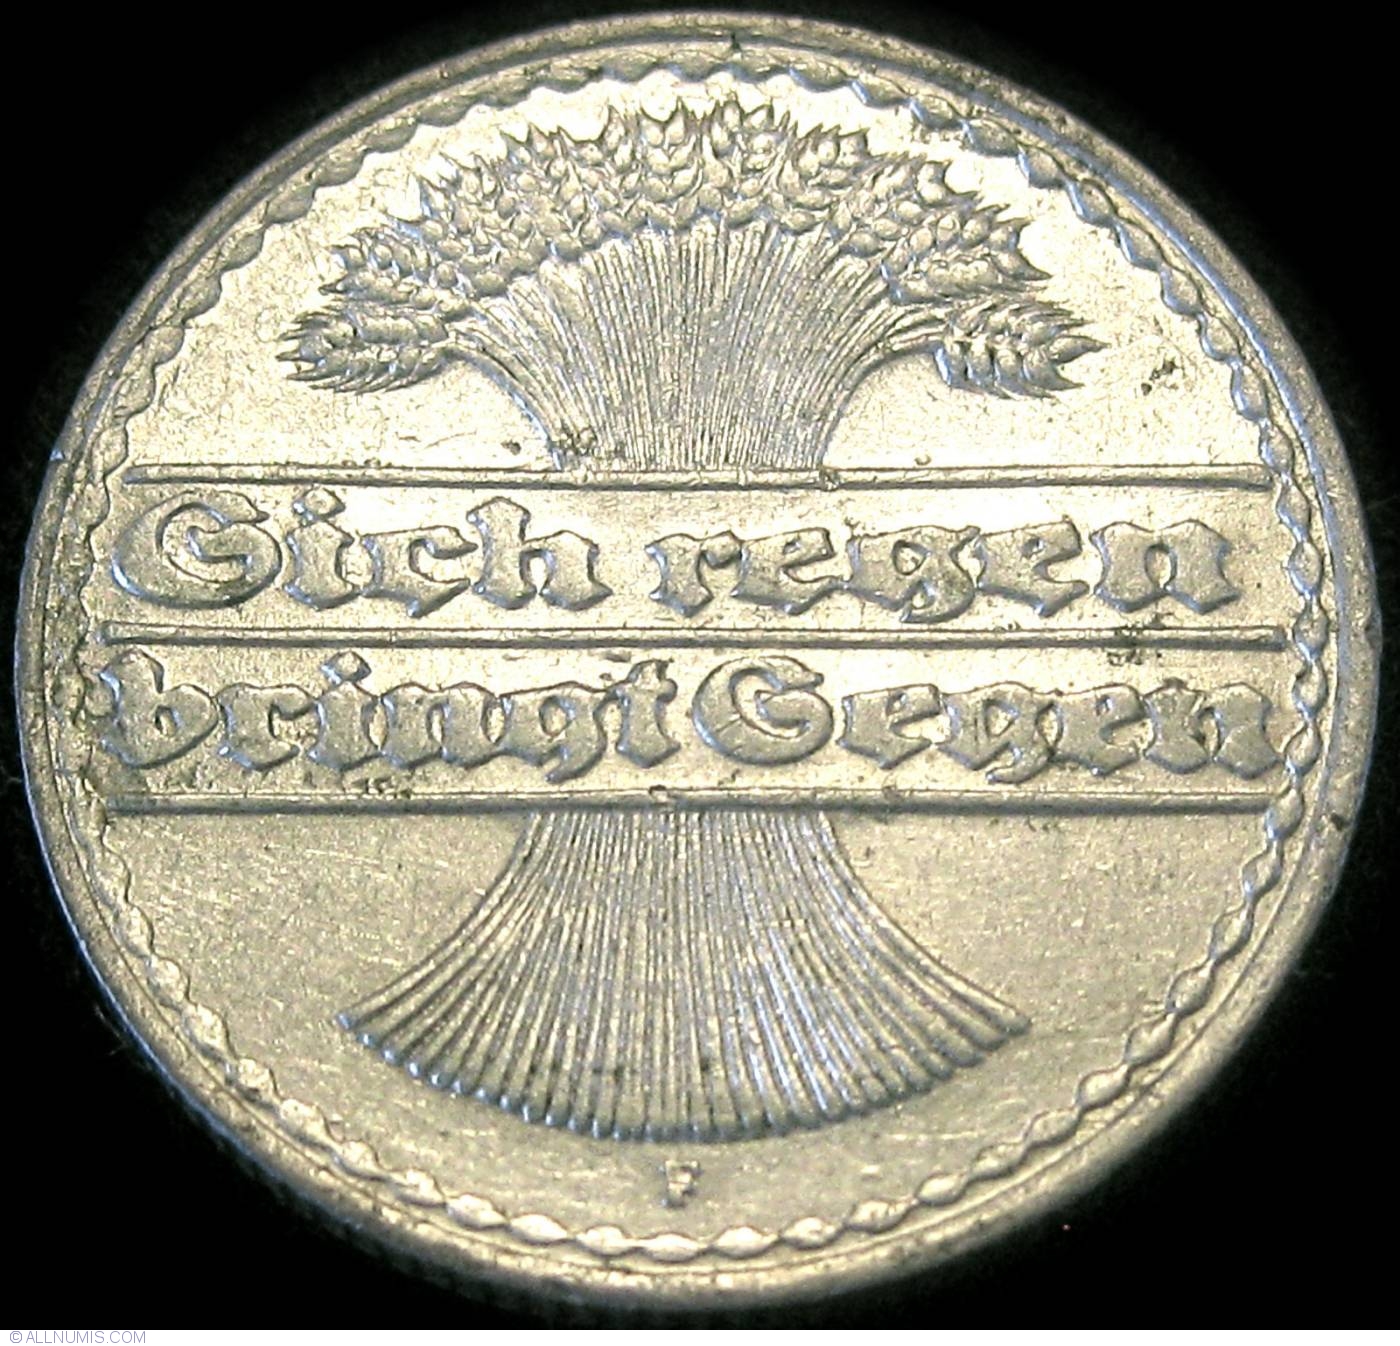 50 Pfennig 1920 F, Weimar Republic (1919-1932) - Germany - Coin - 24396